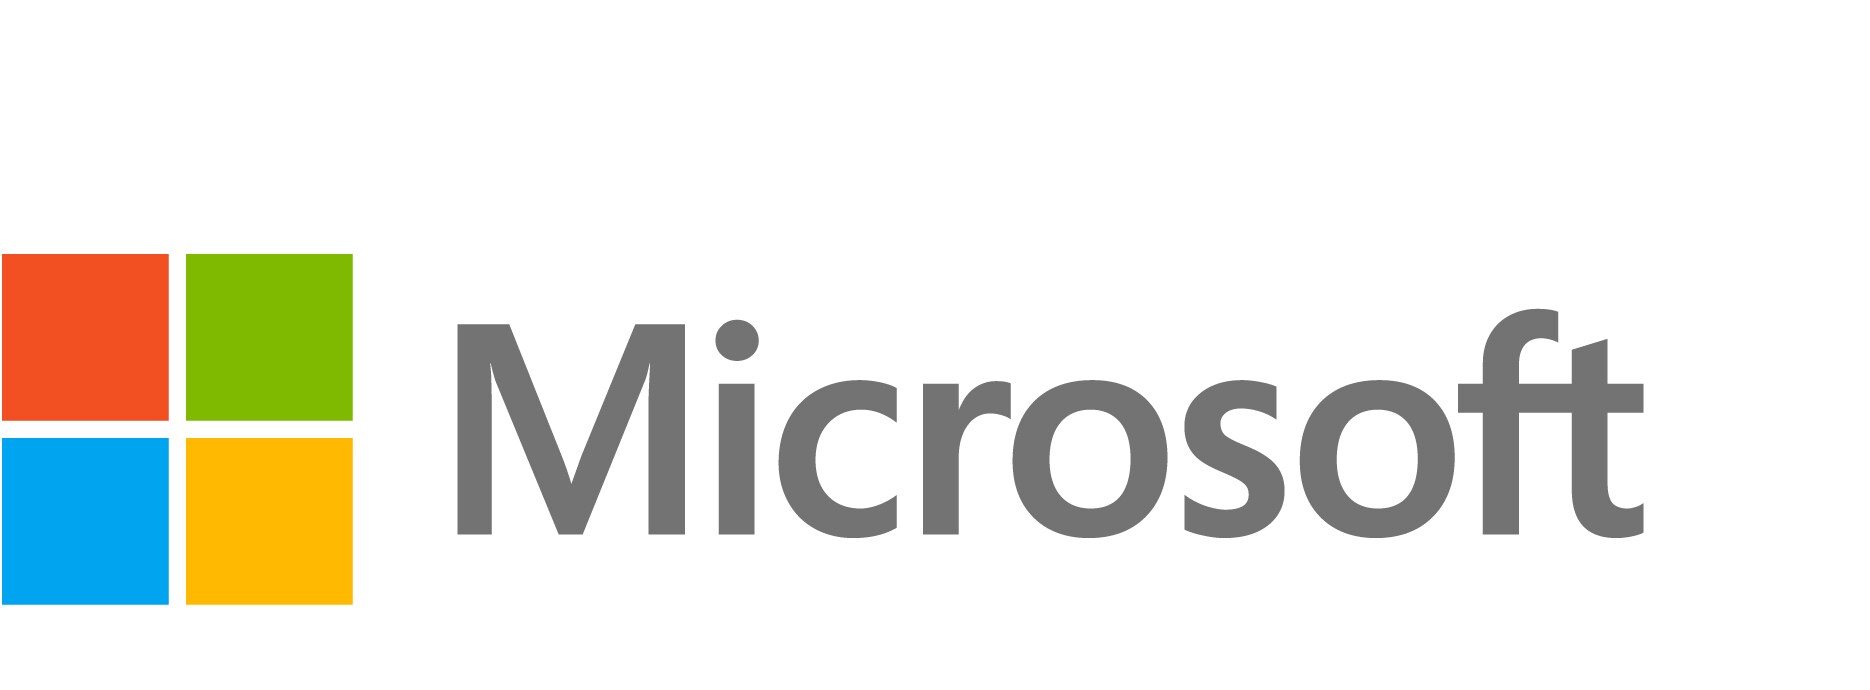 Microsoft Azure DevOps Server - license & software assurance - 1 server